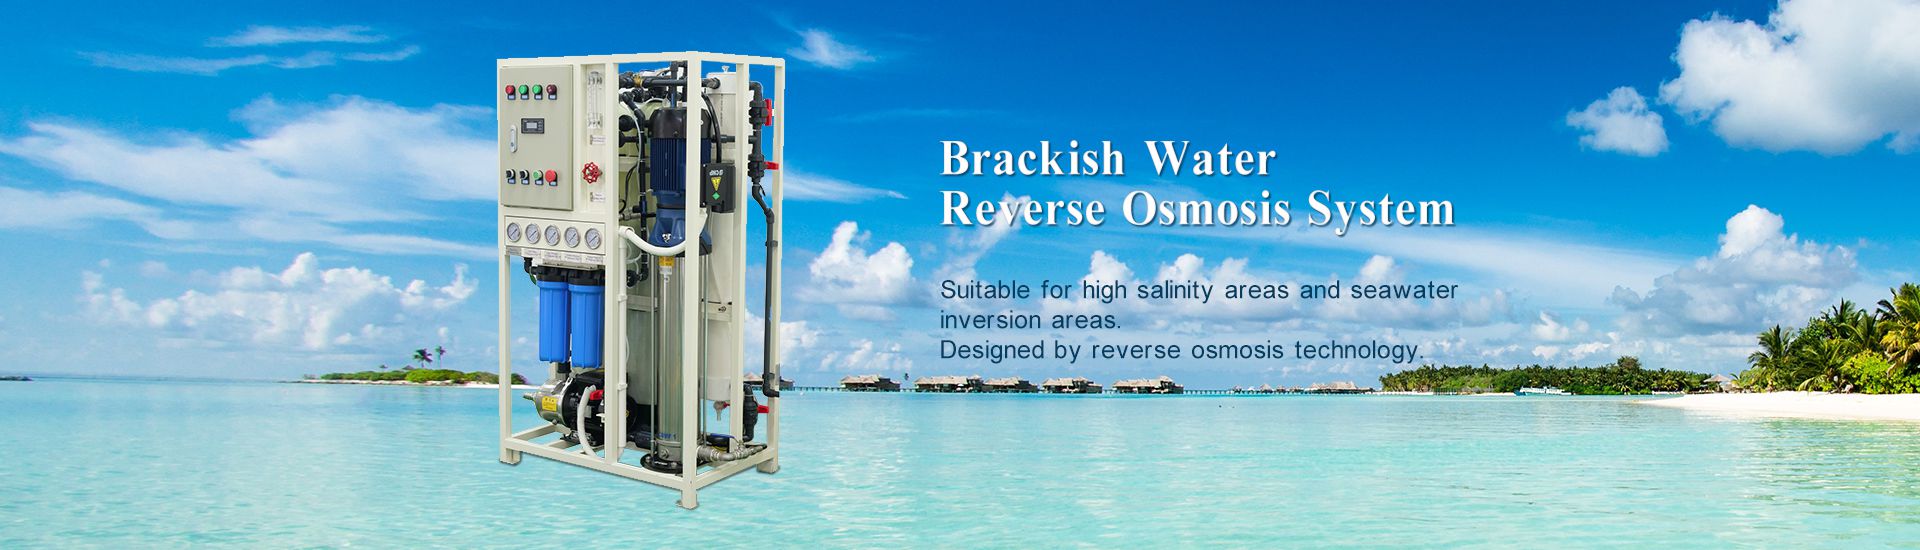 Brackish Water Reverse Osmosis